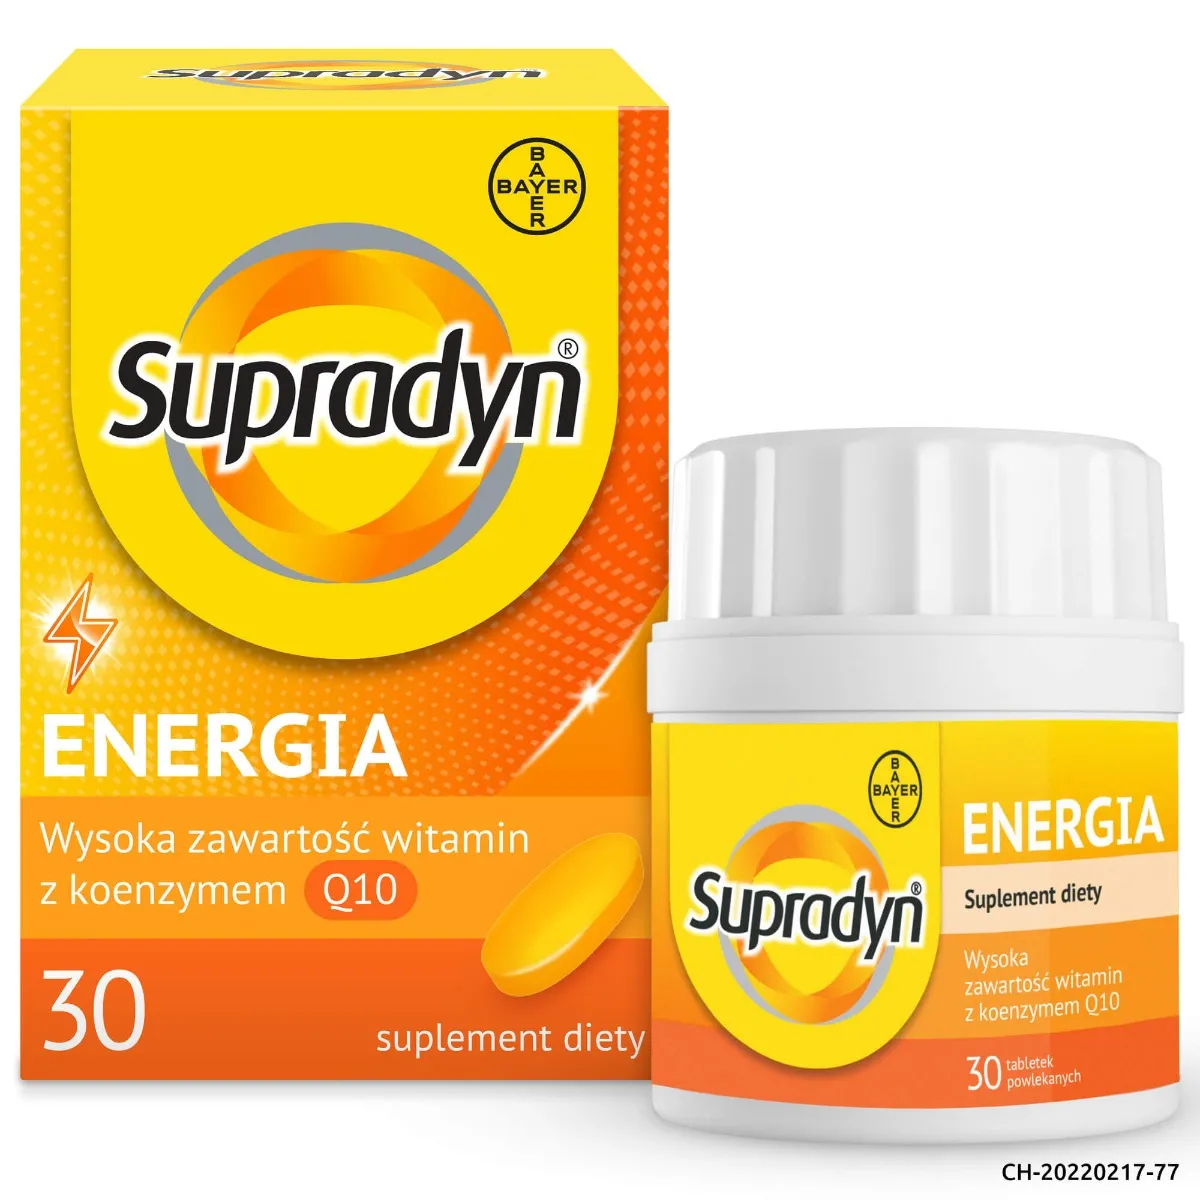 Supradyn Energia, suplement diety, 30 tabletek powlekanych 